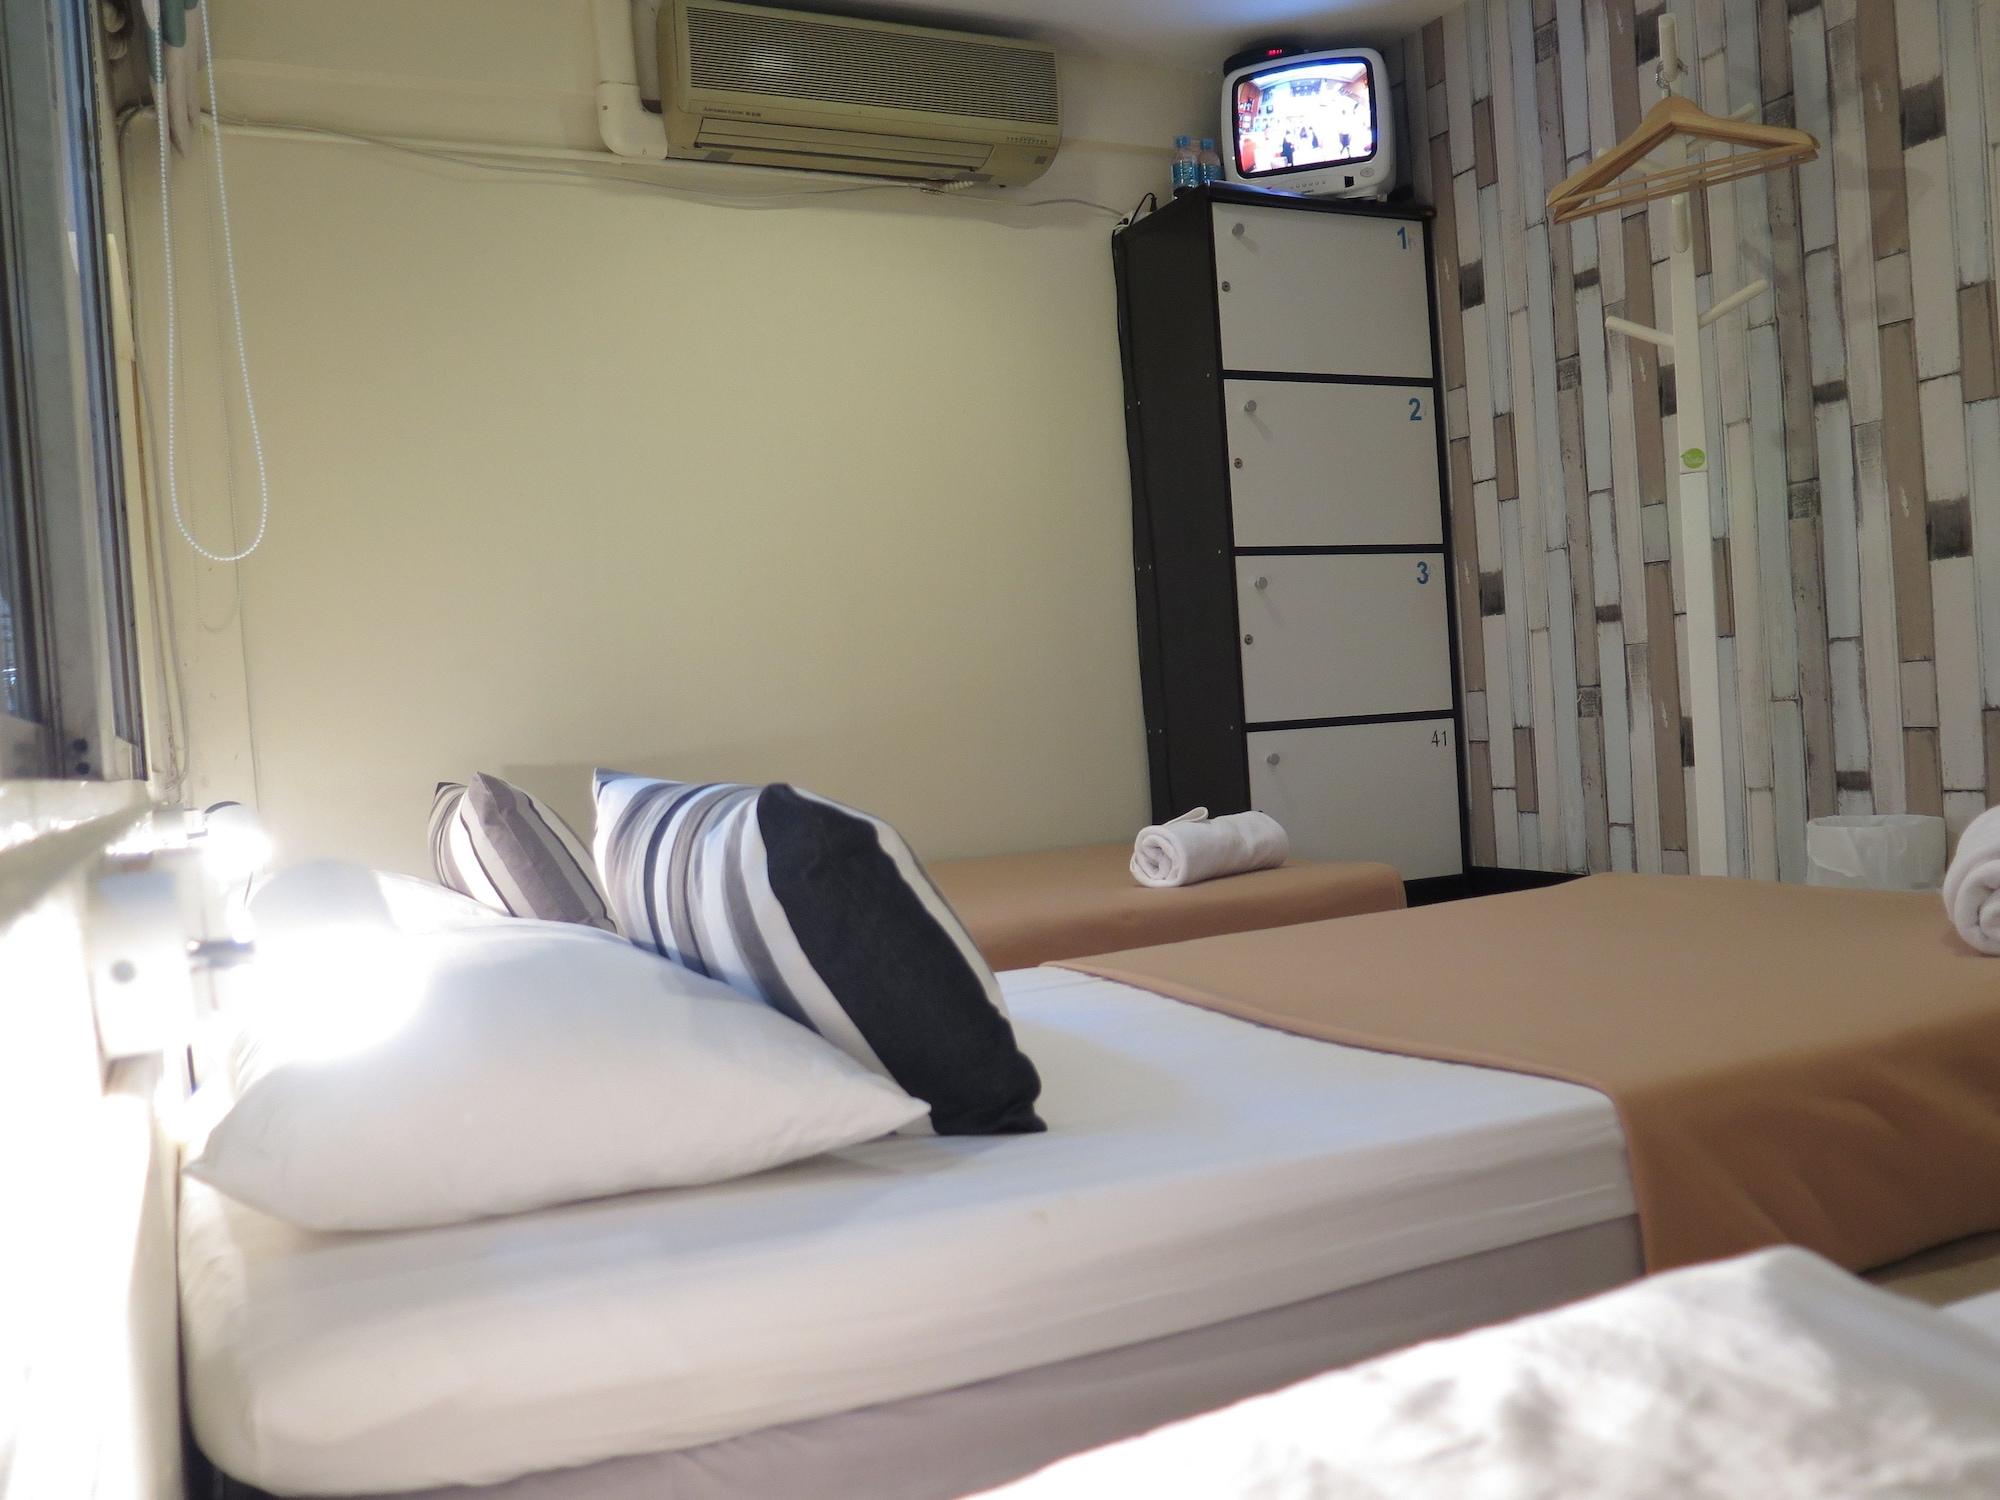 I-Sleep Silom Hostel Bangkok Extérieur photo